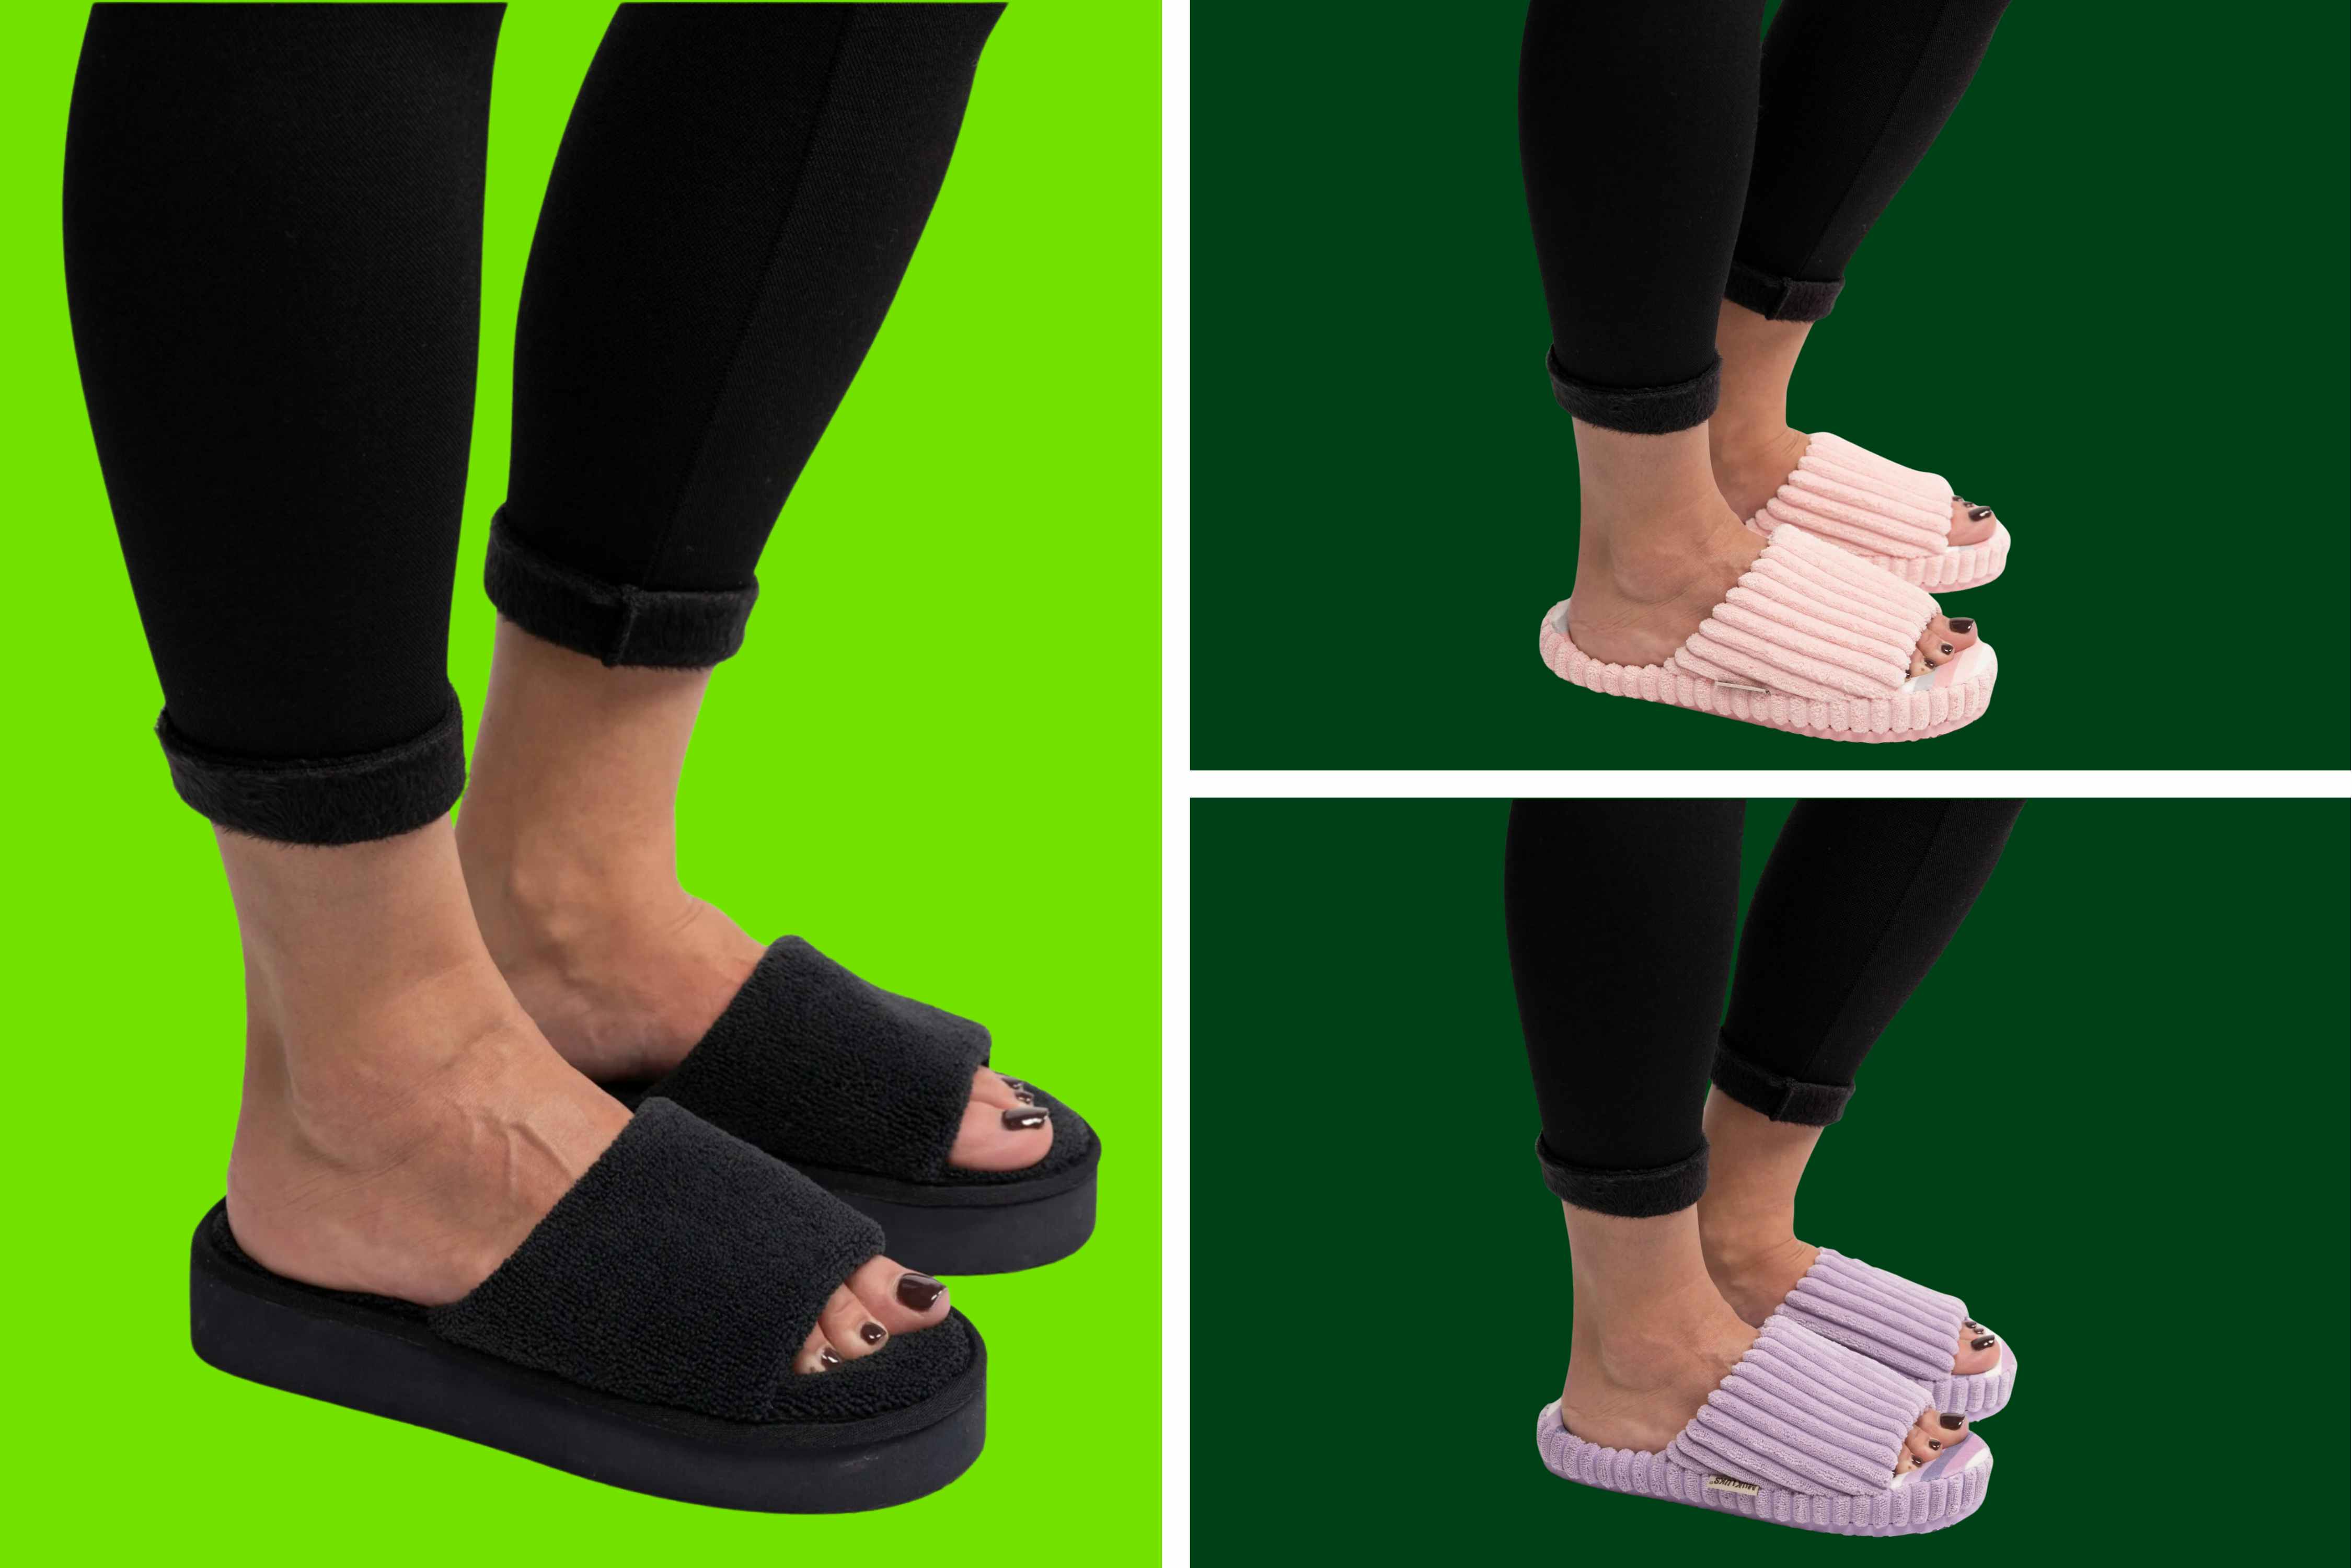 Muk Luks Women's Pool Slide Sandals, as Low as $9.88 at Walmart